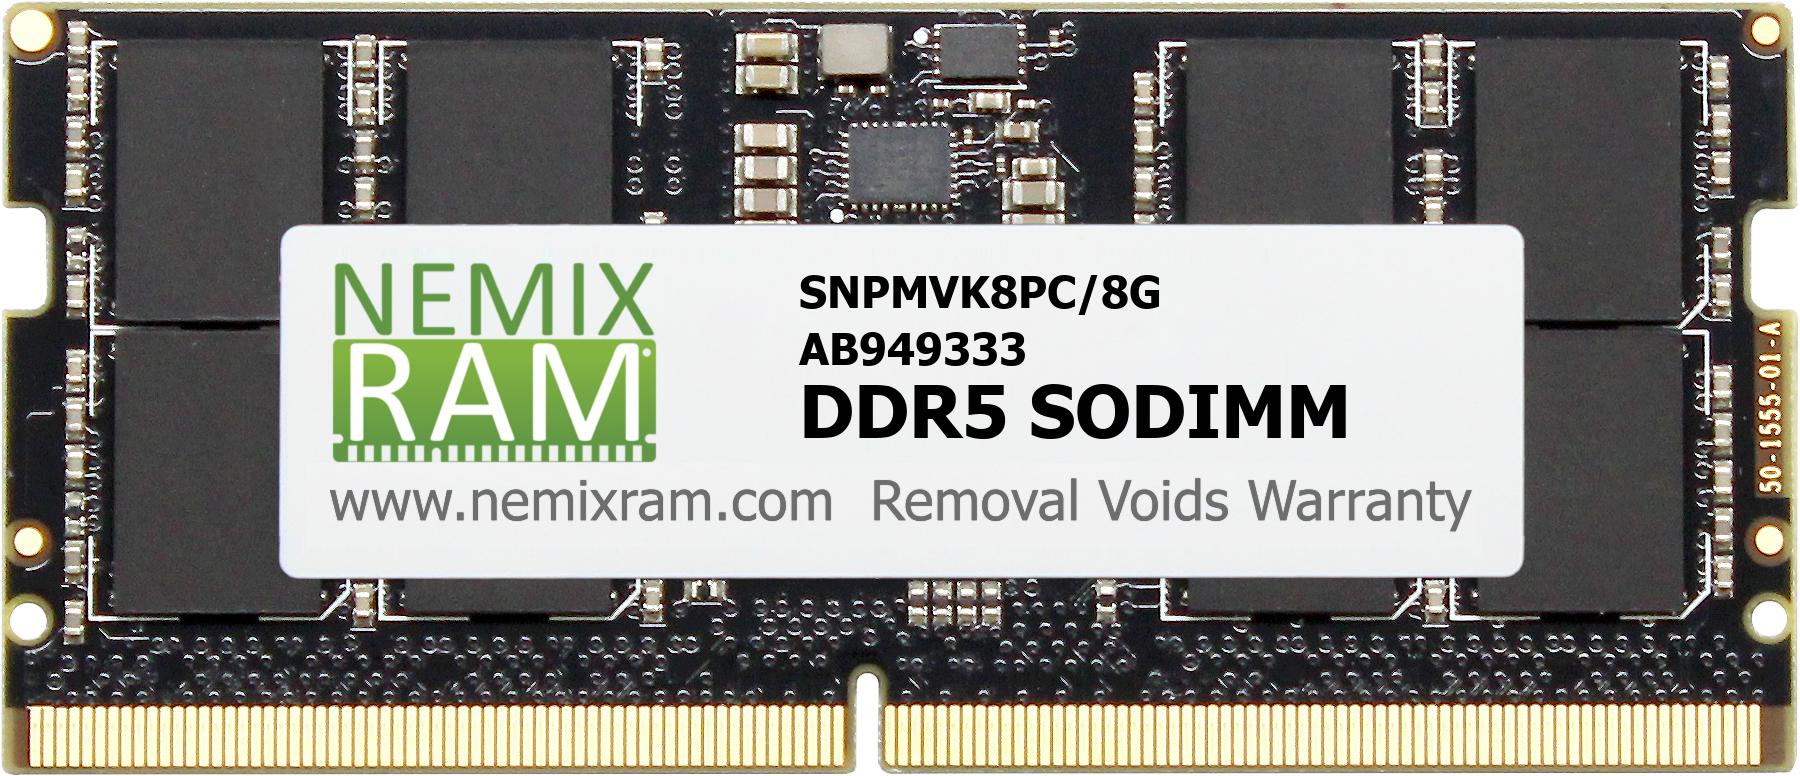 NEMIX RAM 8GB DDR5 4800MHZ PC5-38400 SODIMM Dell Compatible Part SNPMVK8PC/8G AB949333